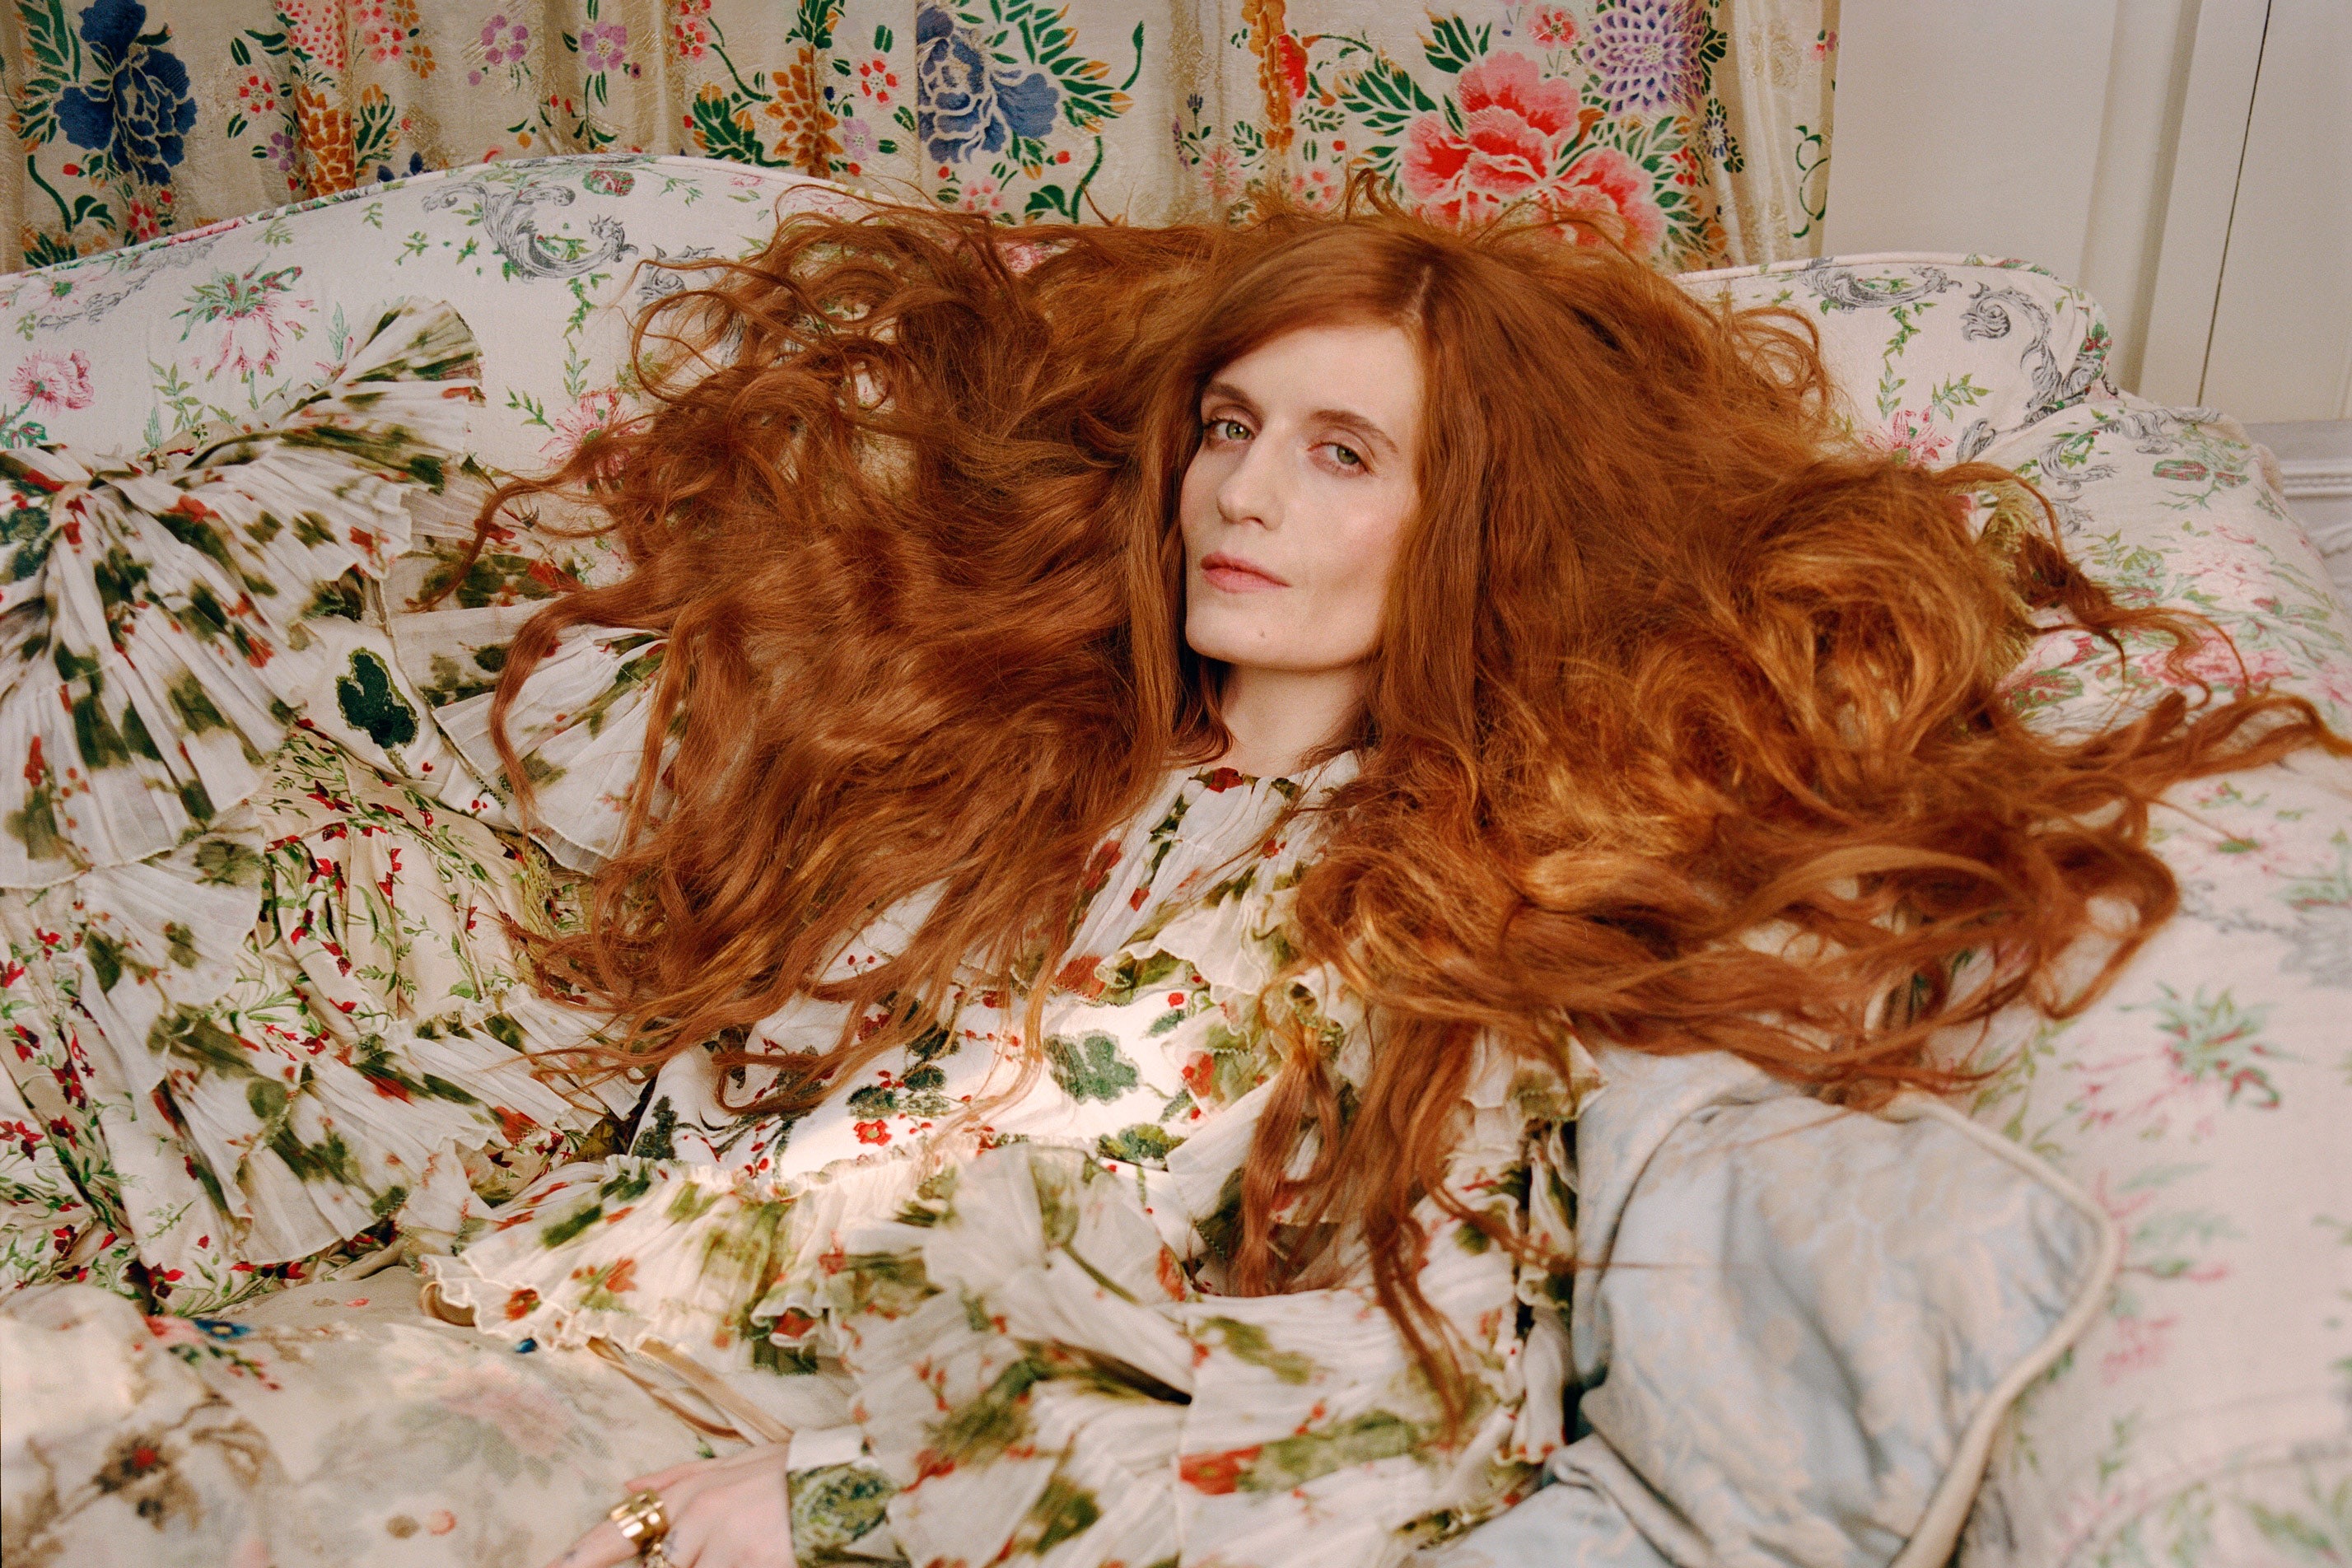 Florence + The Machine sorprende con cover de “Just a Girl” de No Doubt